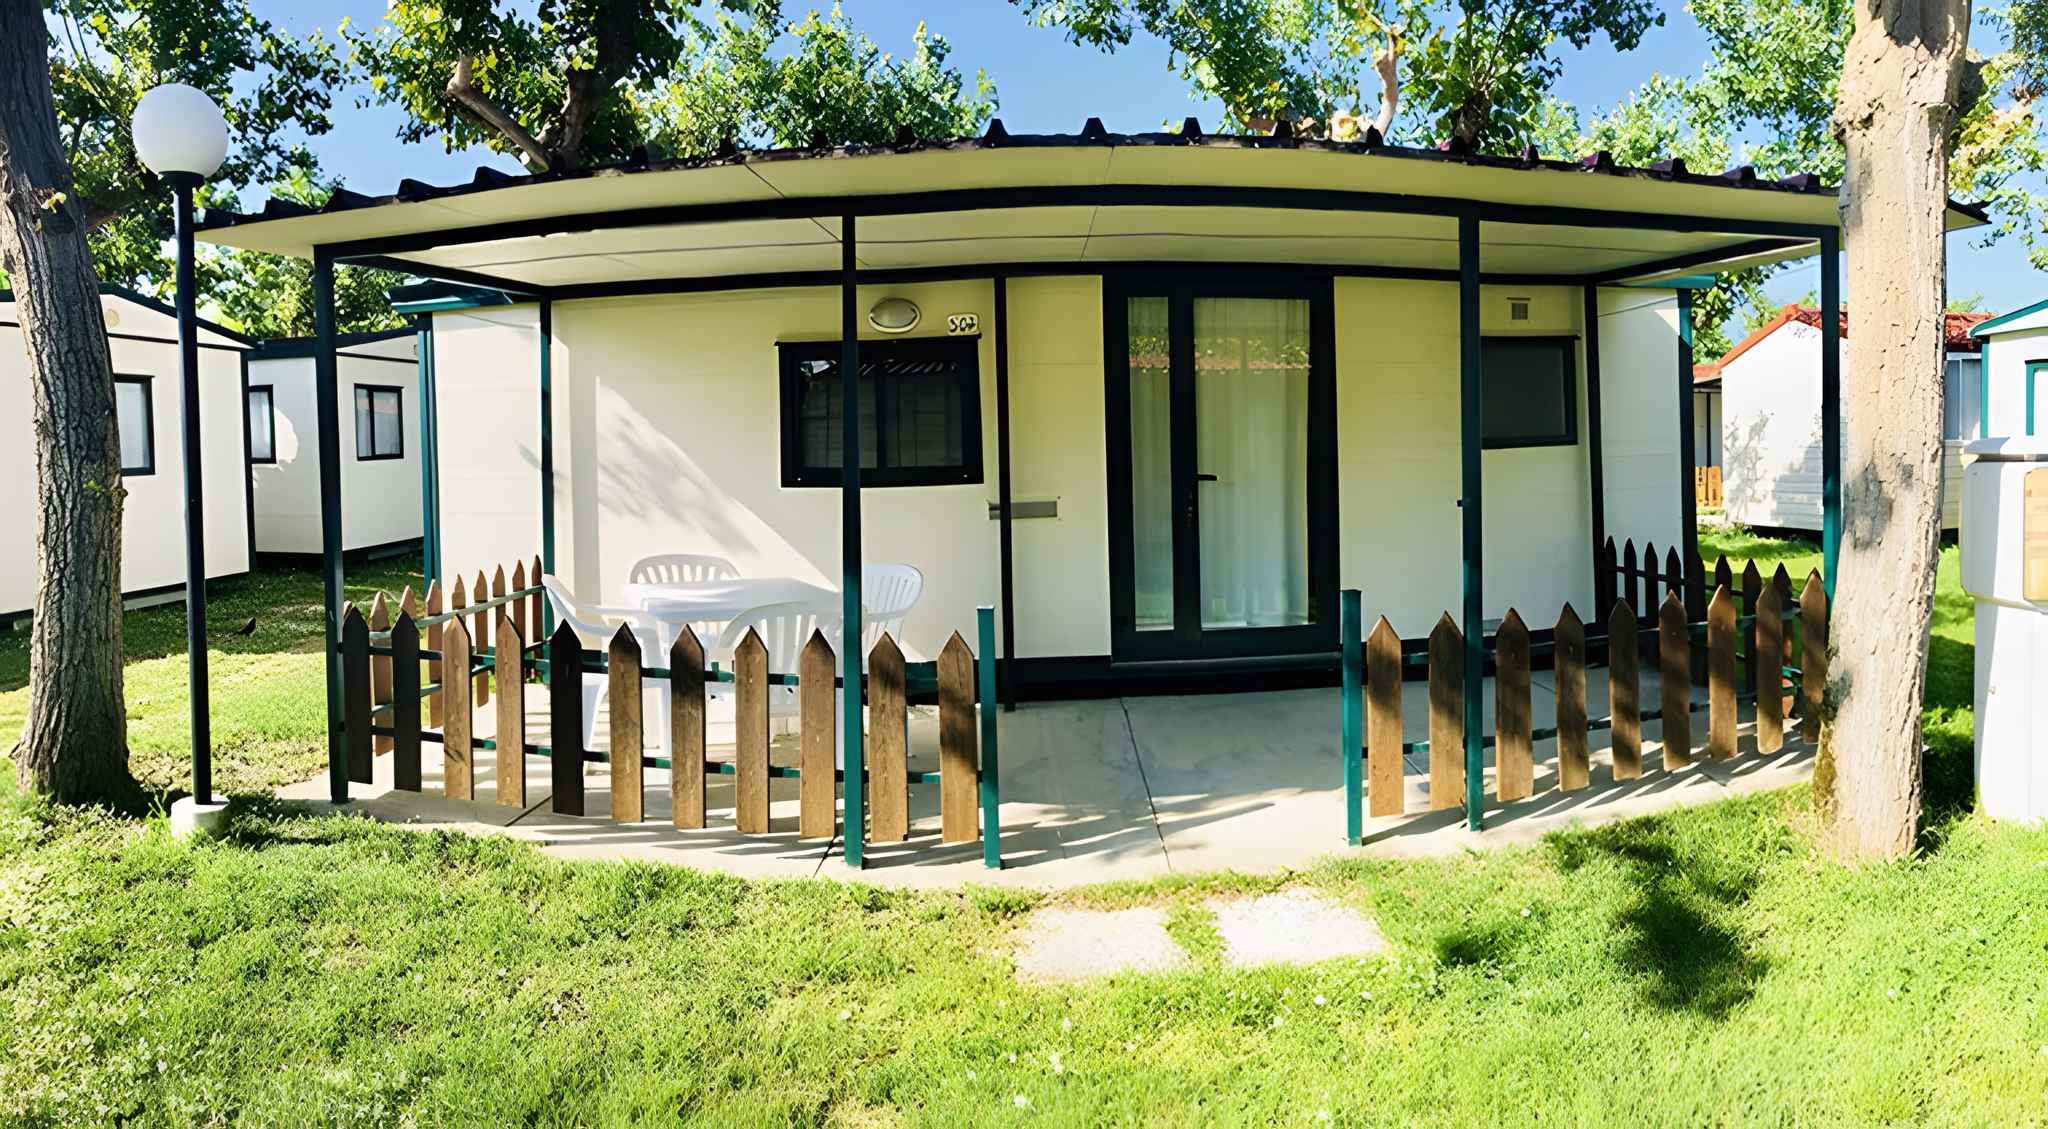 Mobilehome auf Campingplatz im Pinienwald Ferienhaus in Europa